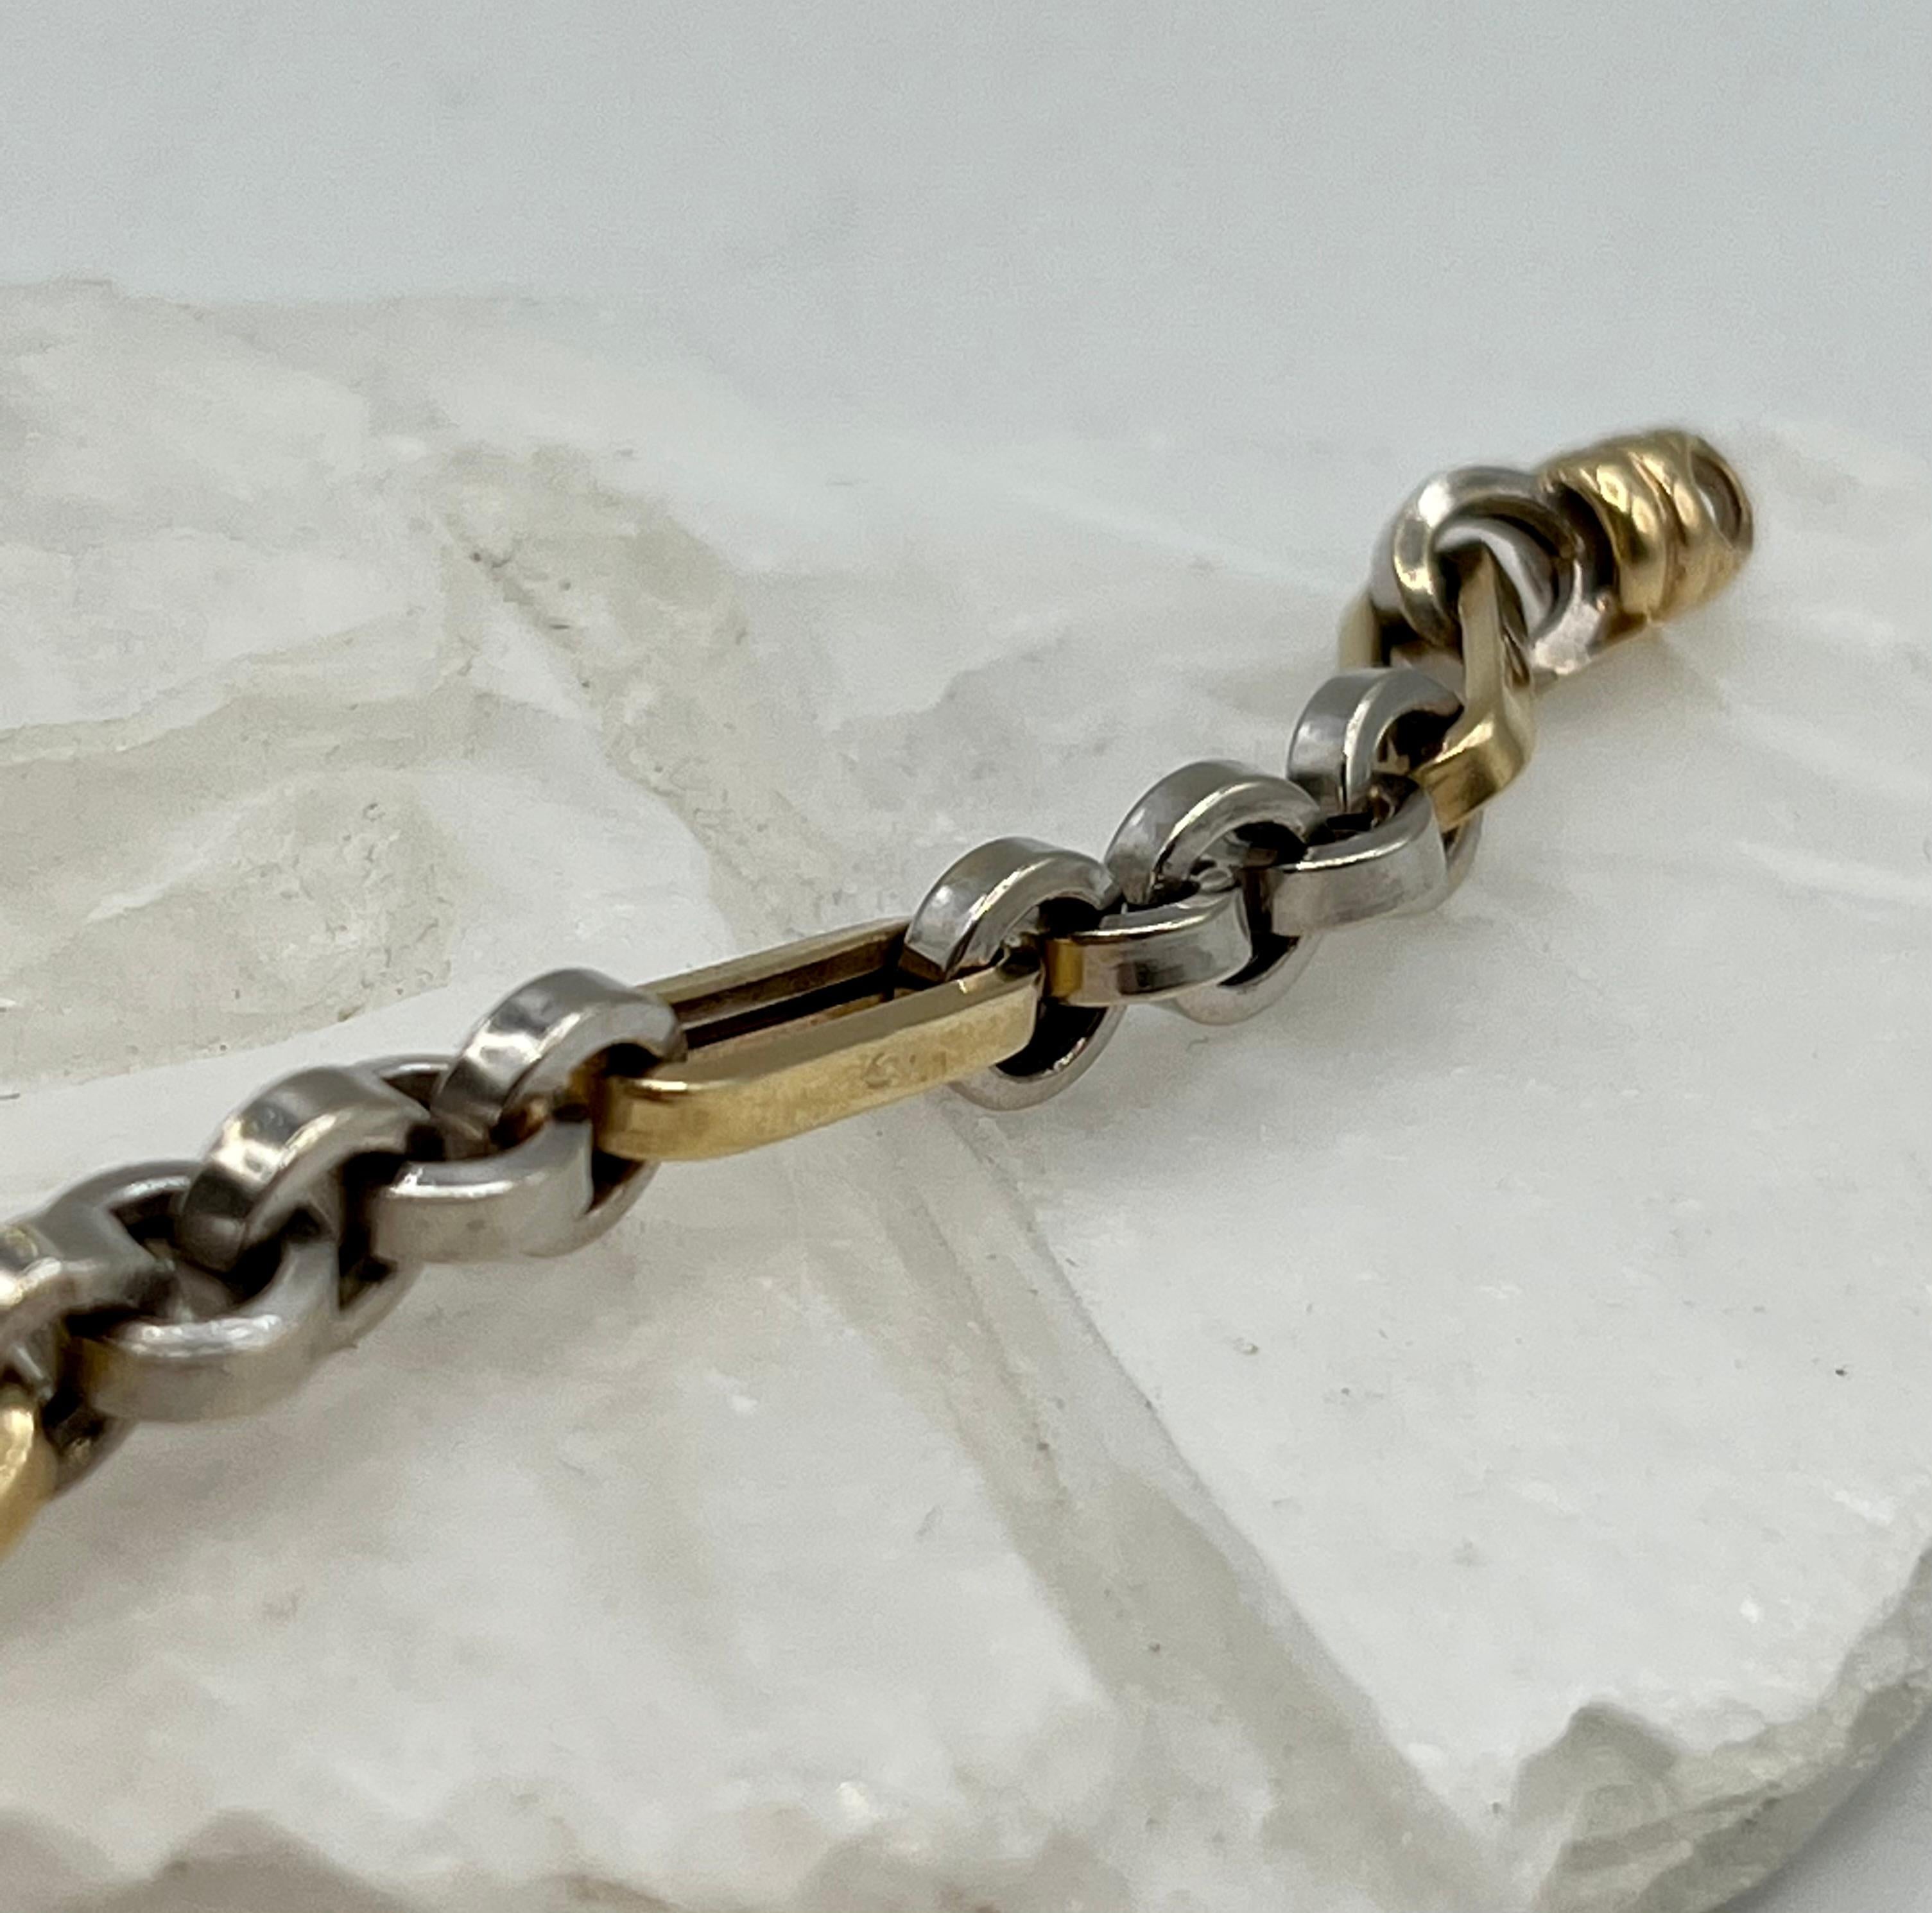 Ce bracelet massif de deux tons peut être porté avec d'autres bracelets ou avec une montre pour un look superposé.
 Les maillons allongés en or jaune et les maillons ronds en or blanc forment un magnifique contraste.